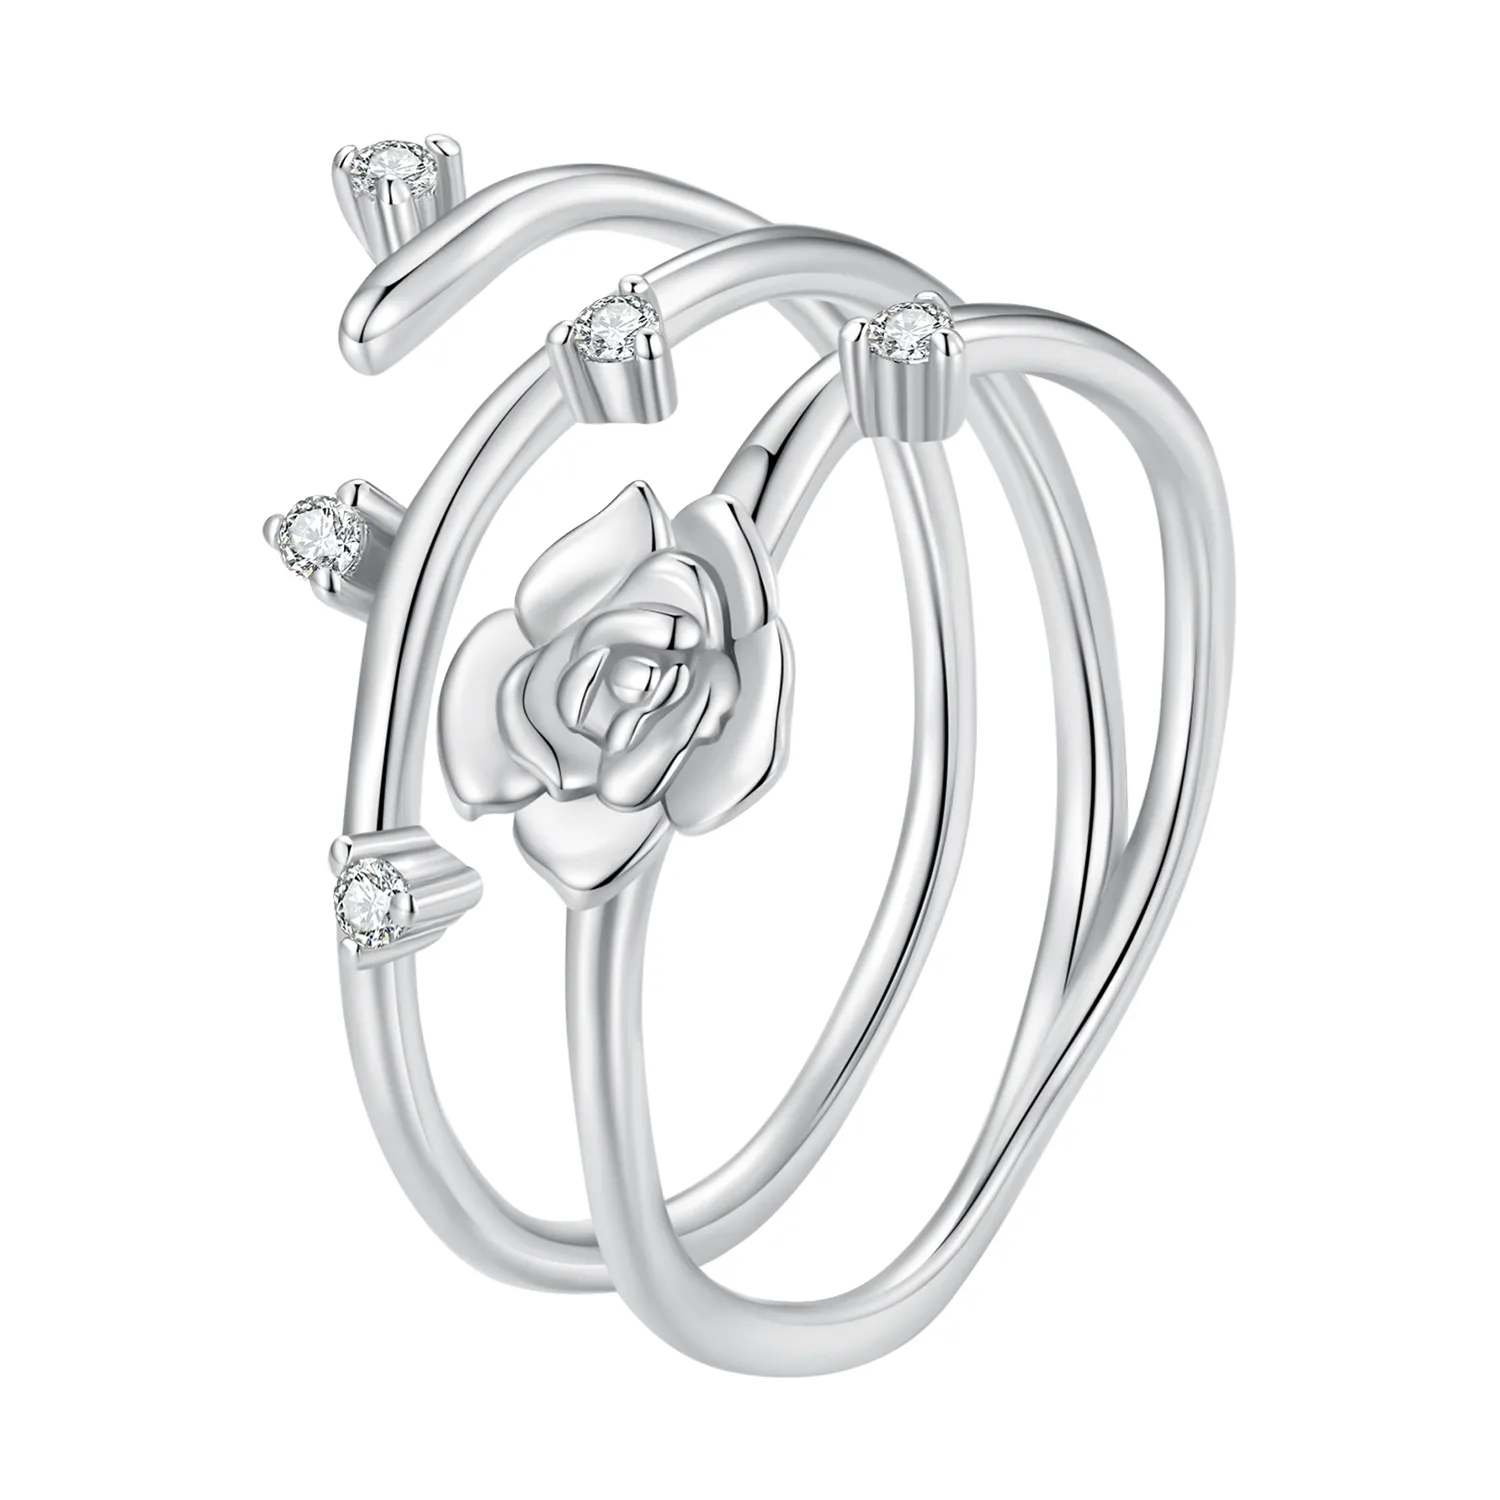 inel personalizat în stil pandora cu design versatil de viță de trandafir bsr404